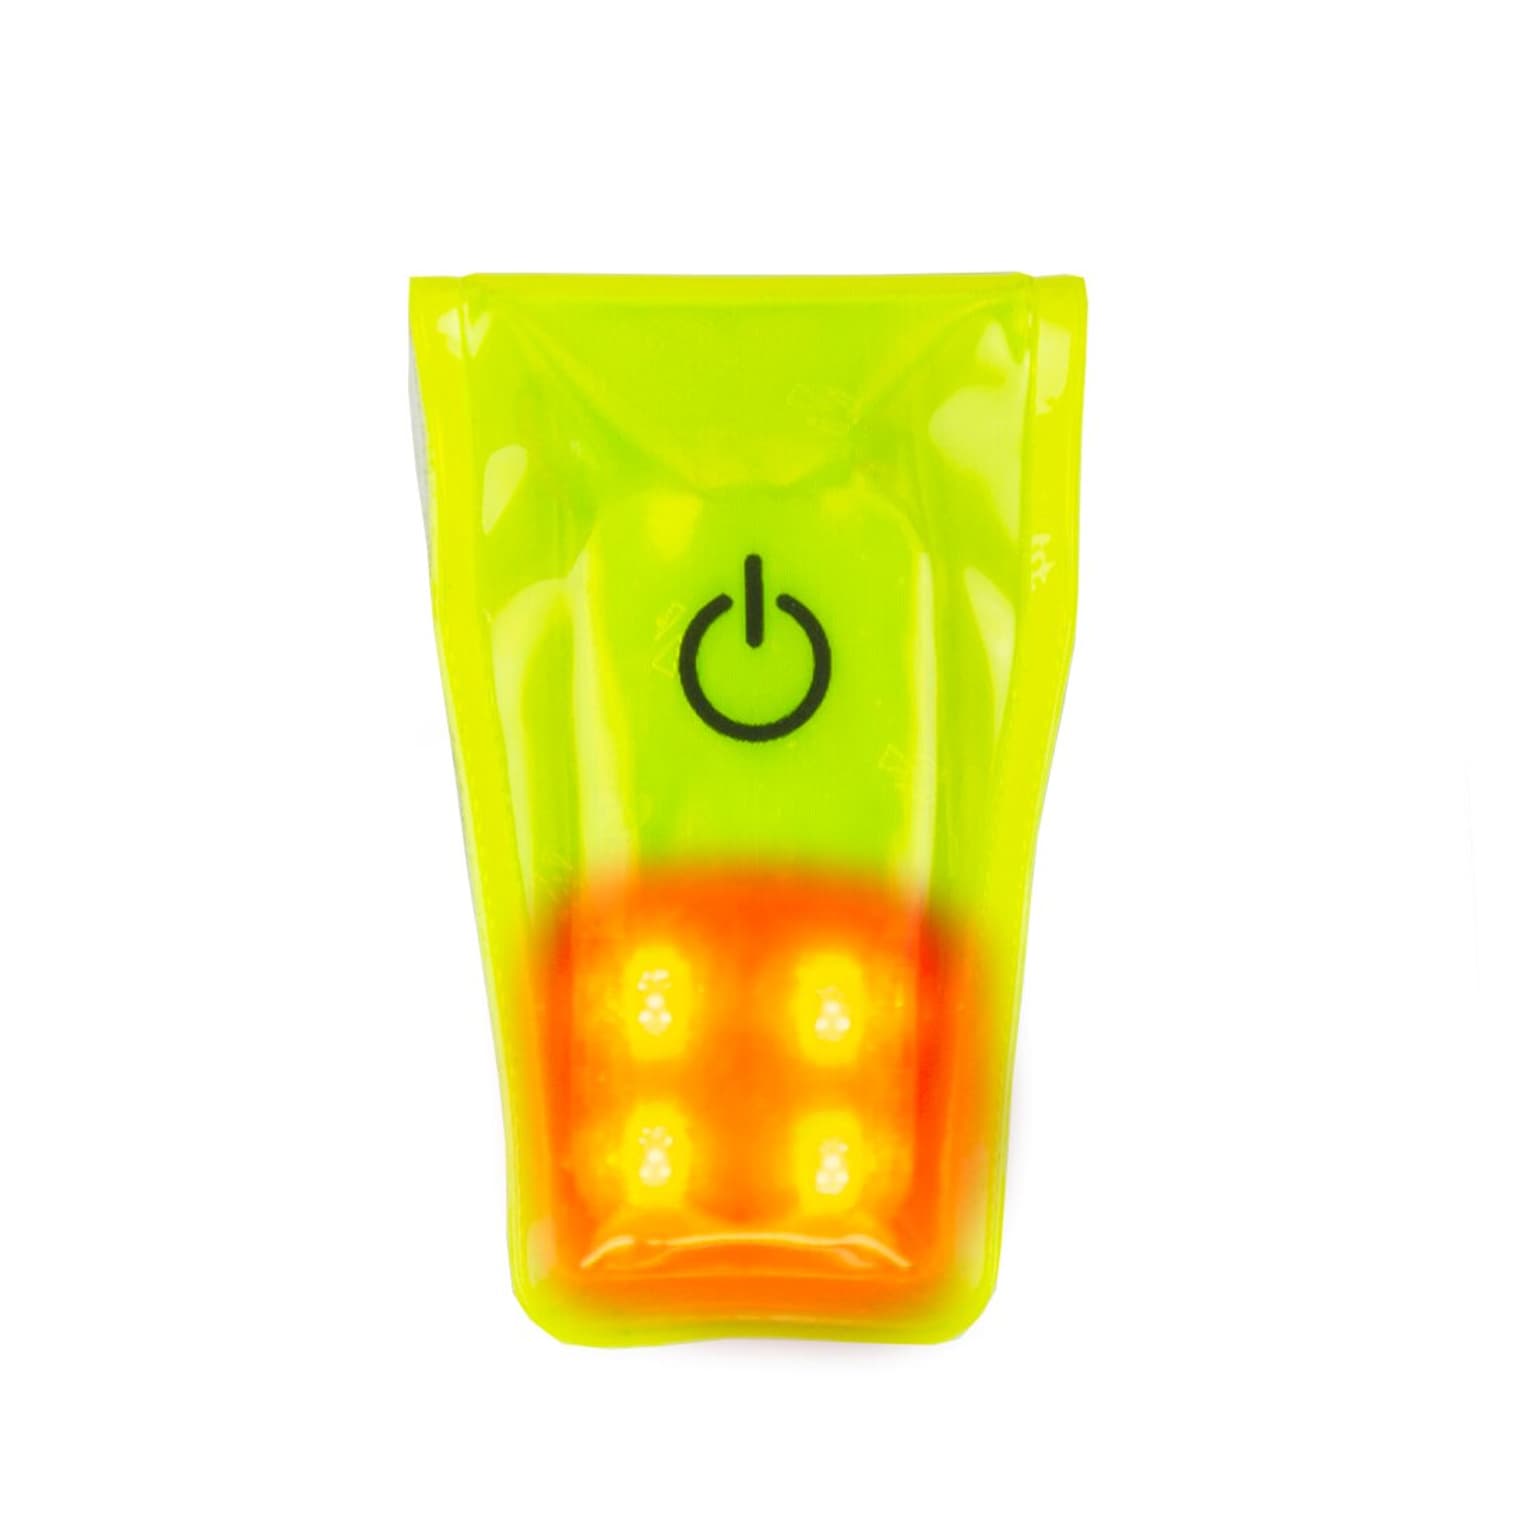 Wowow Wowow Magnet Light 2.0 Riflettori giallo 1